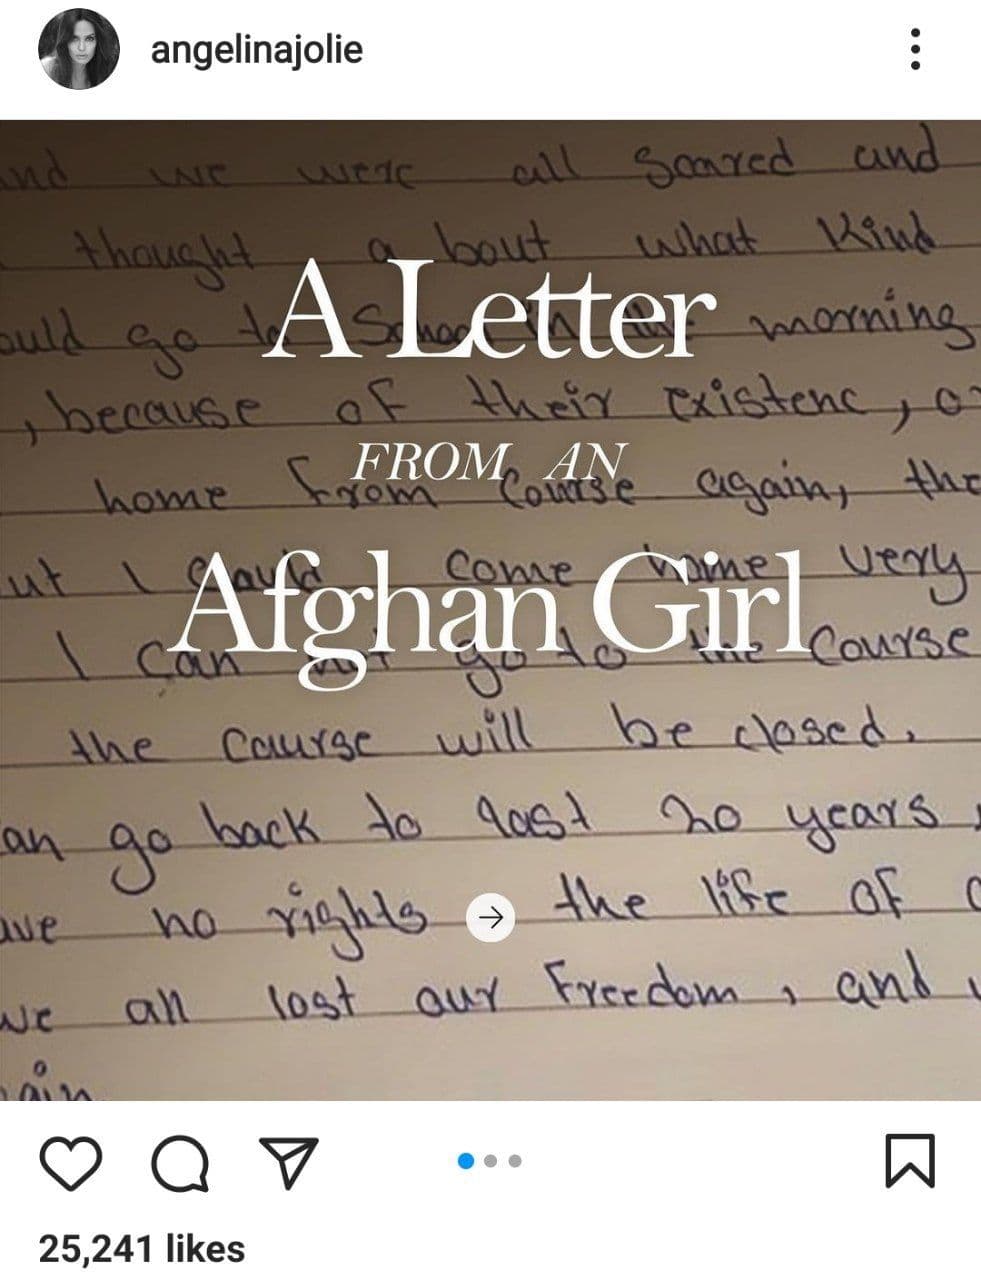 نامه ای از دختر افغان برای آنجلینا جولی در صفحه رسمی اینستاگرام آنجلینا جولی منتشر شد